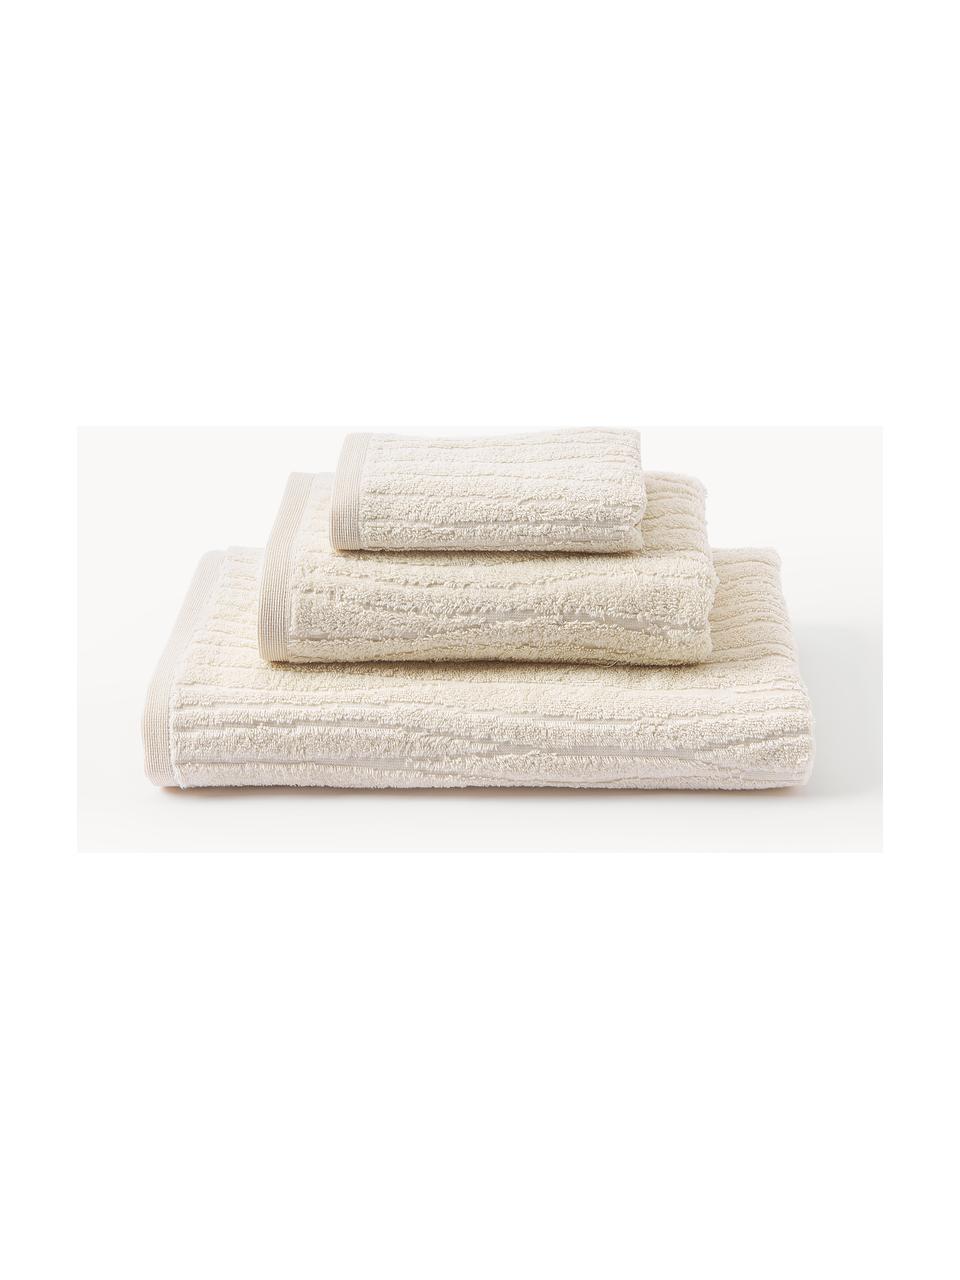 Lot de serviettes de bain en coton Audrina, tailles variées, Beige clair, 3 éléments (1 serviette invité, 1 serviette de toilette et 1 drap de bain)